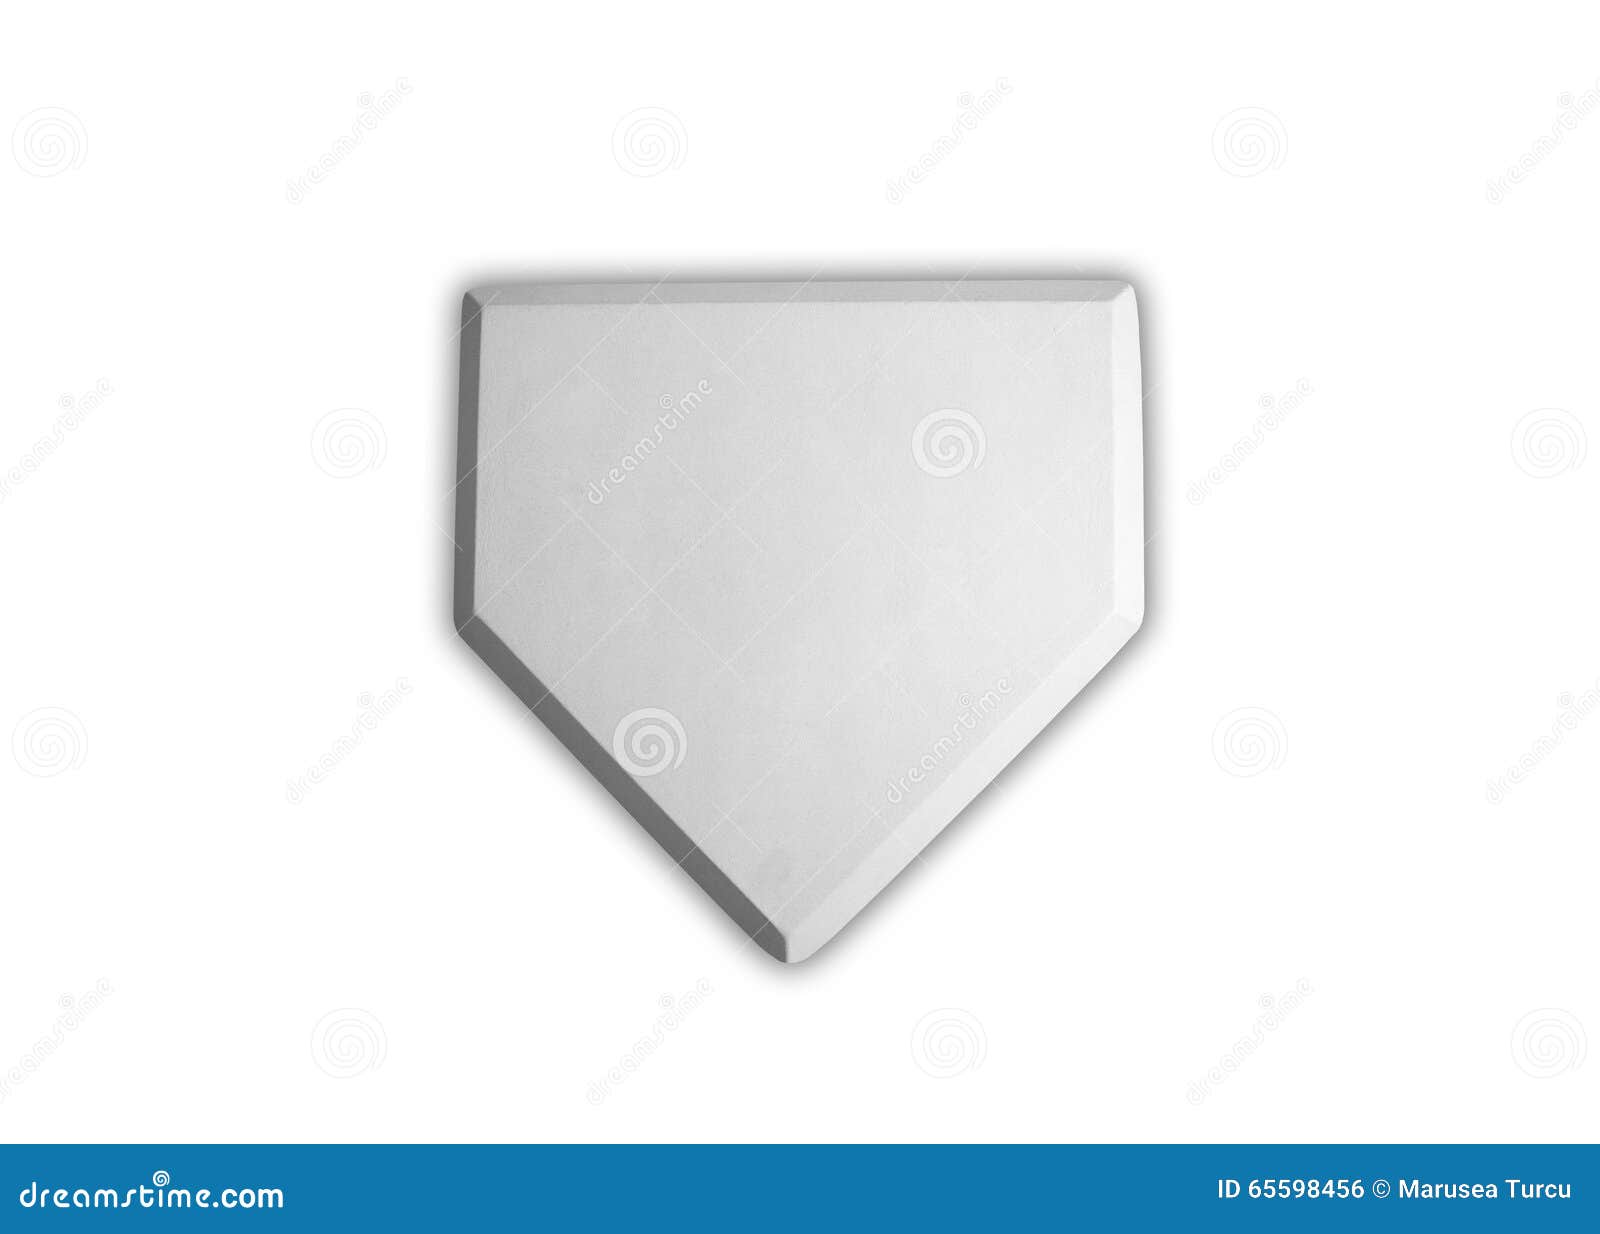 baseball home plate base